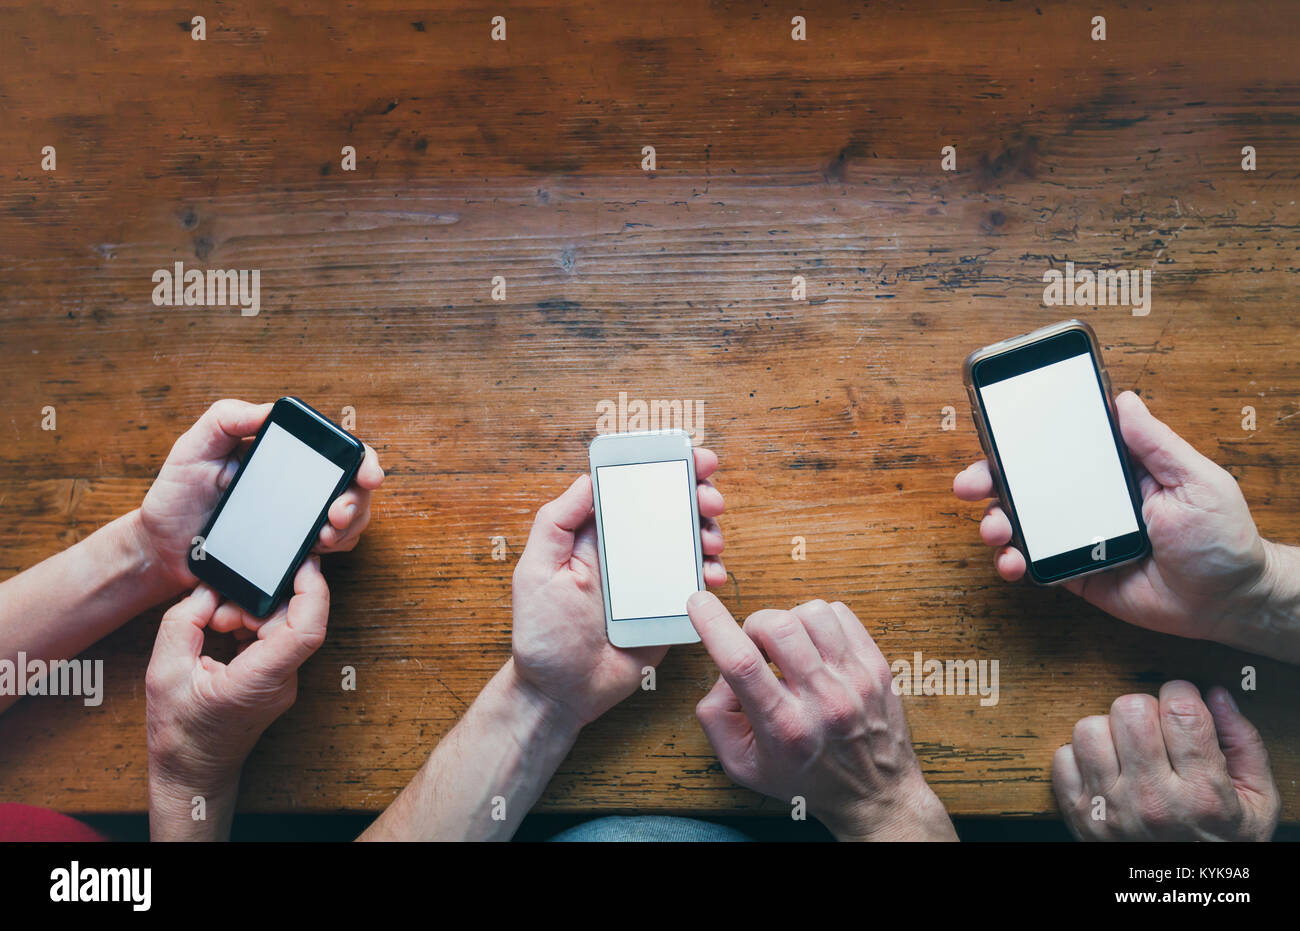 Concept de réseau social, beaucoup de mains avec les smartphones gadgets sur fond de bois Banque D'Images